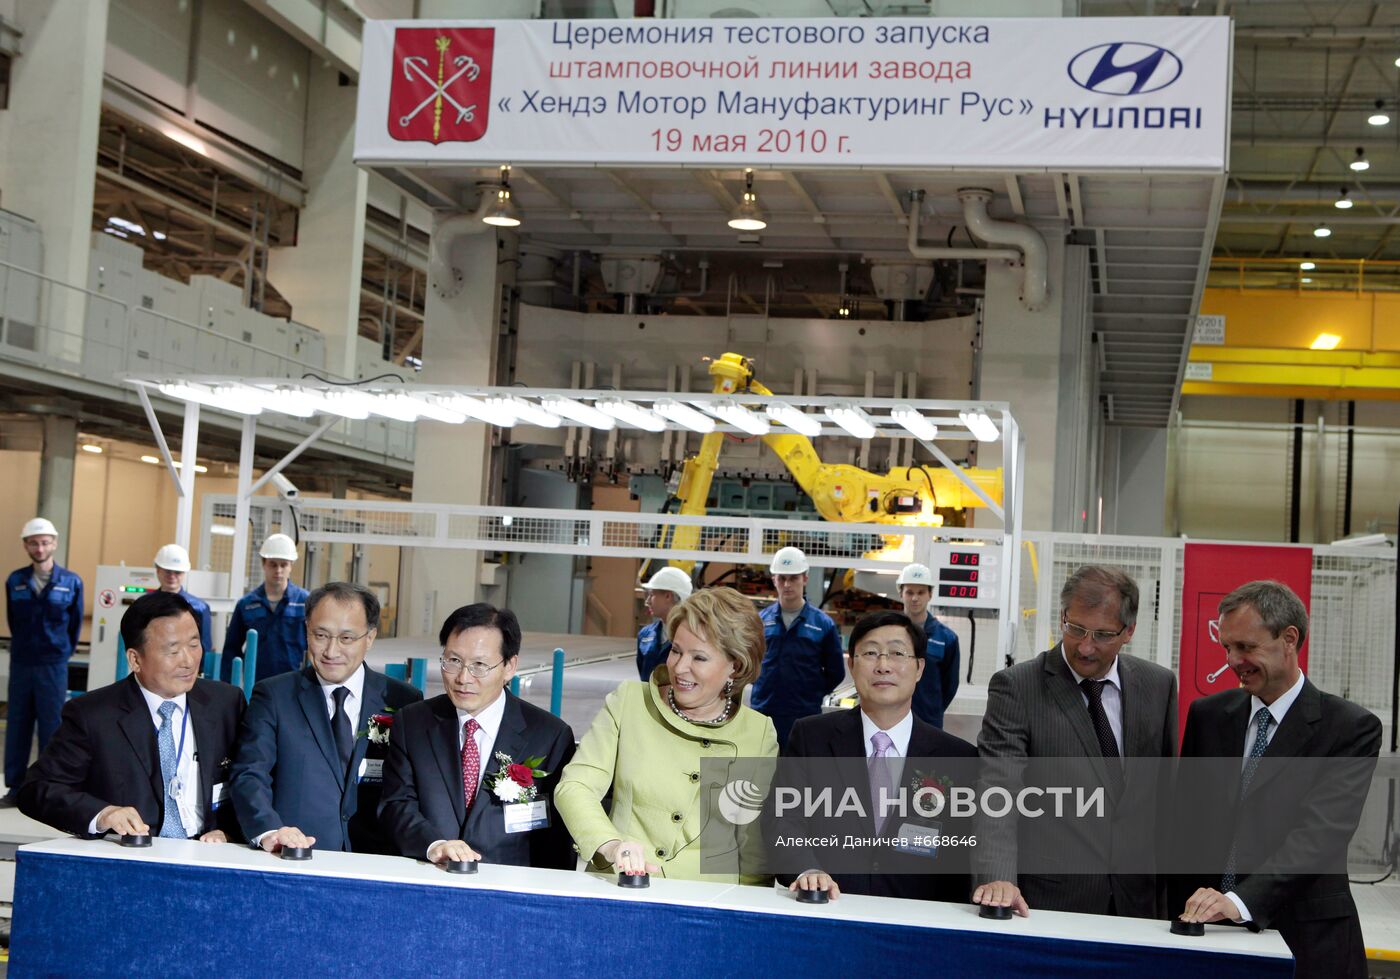 Тестовый запуск штамповочной линии Hyundai в Санкт-Петербурге